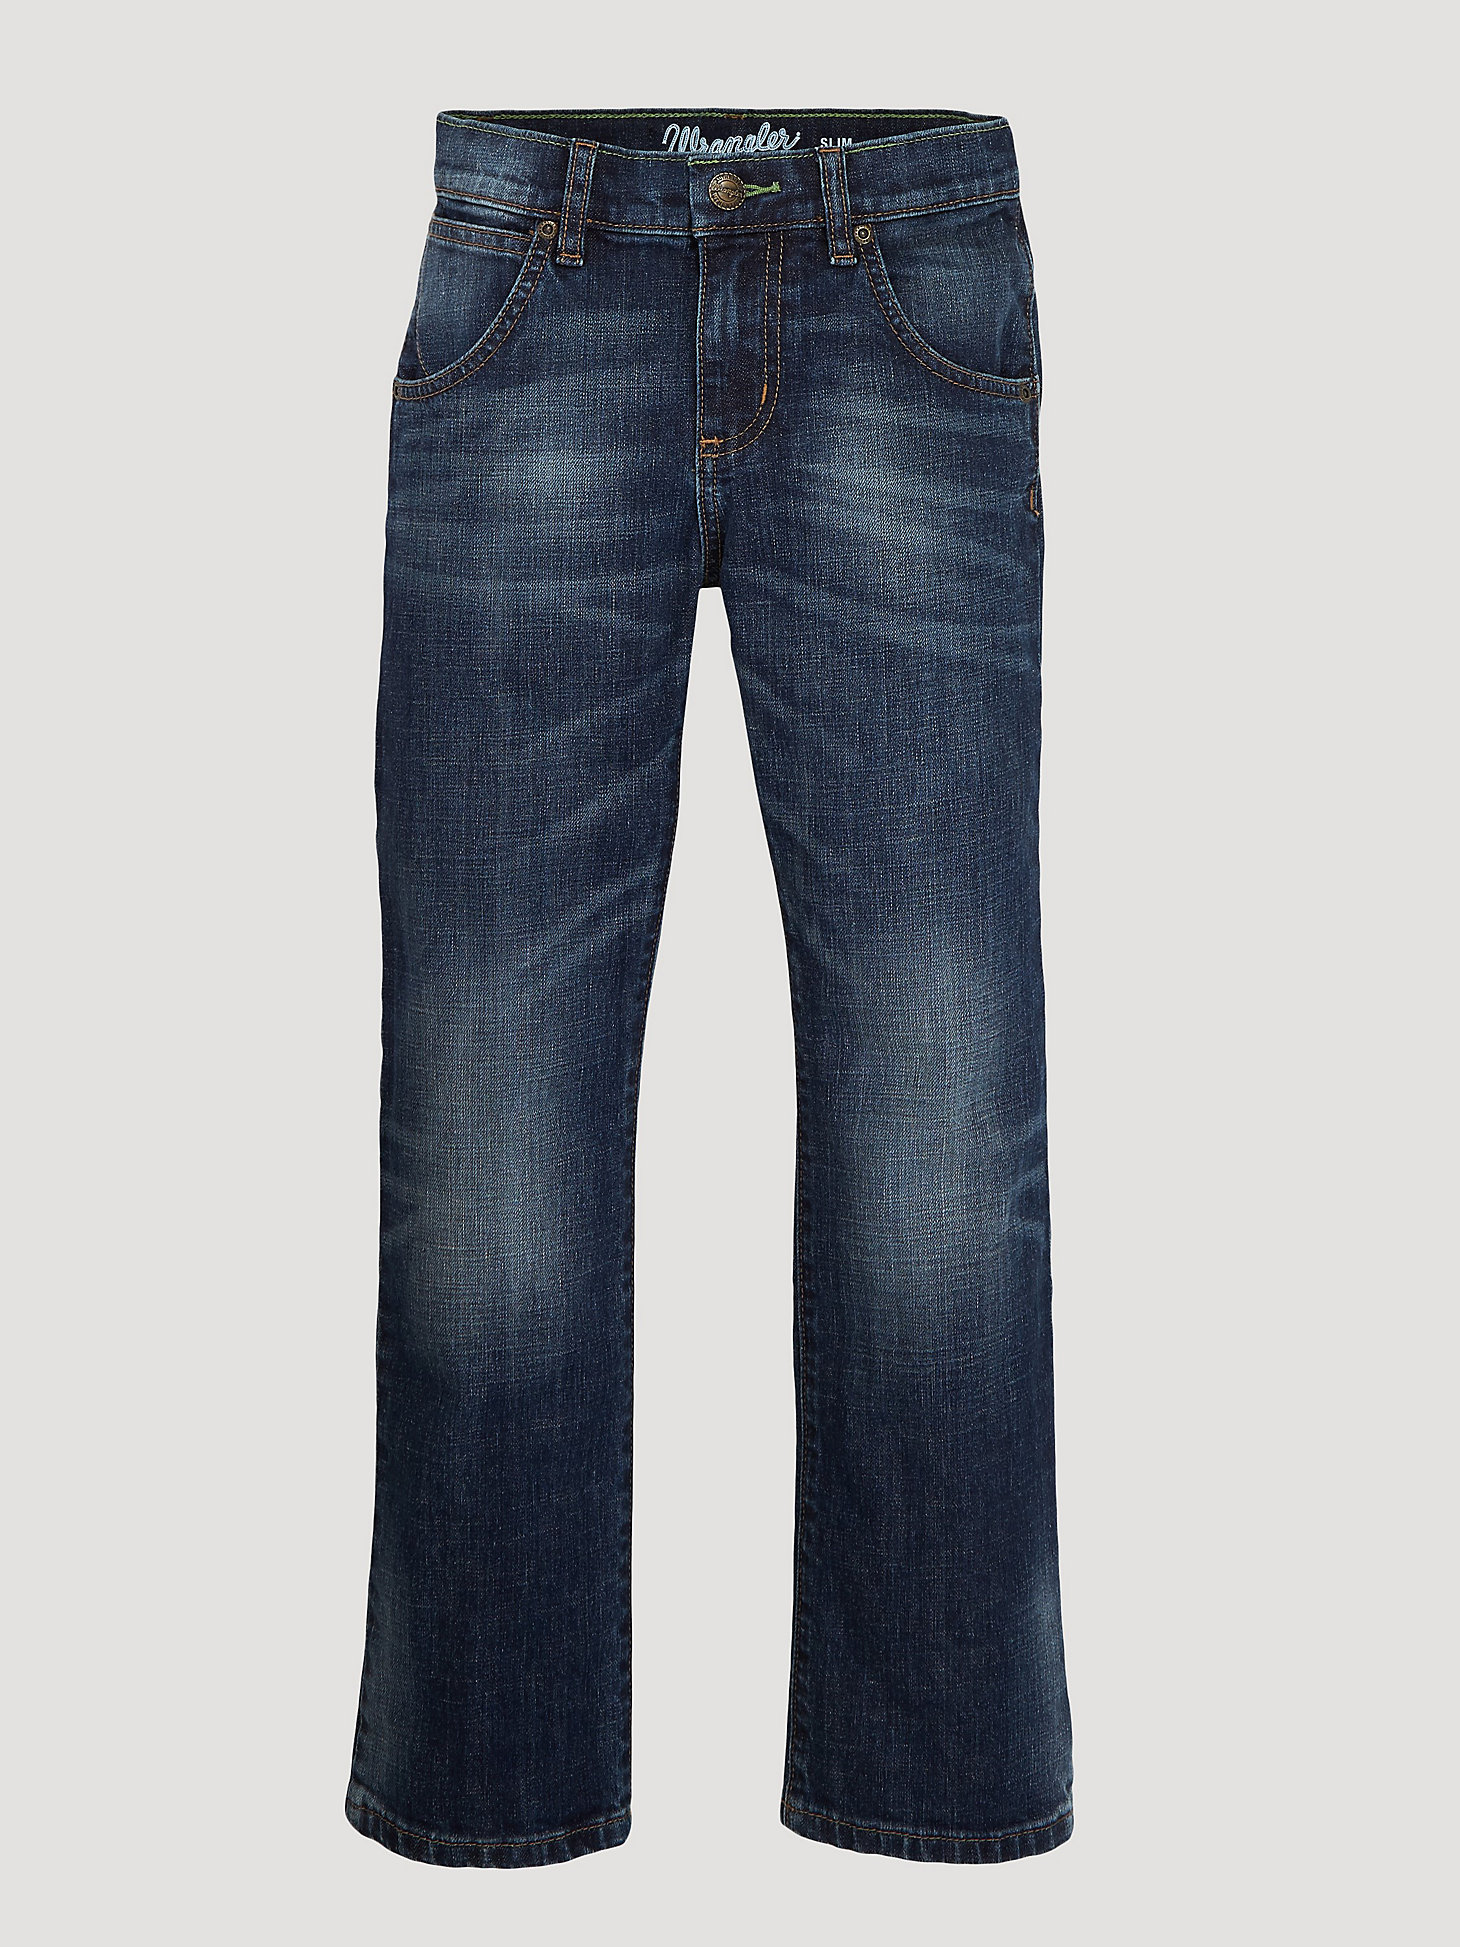 Boy's Wrangler Retro® Slim Straight Jean (8-20) in Bozeman alternative view 2